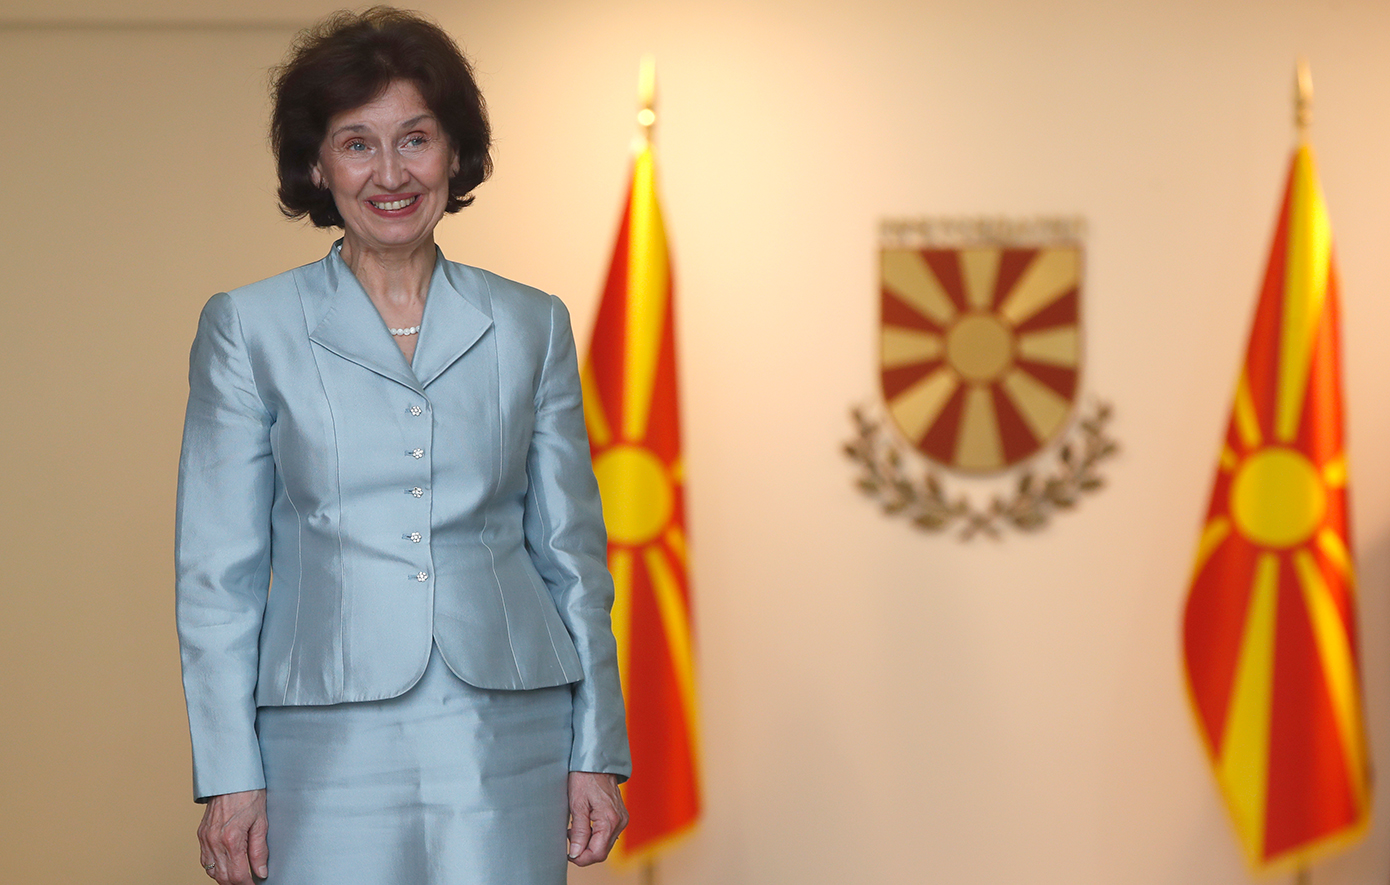 Προκαλεί η Σιλιάνοφσκα: Σέβομαι τη Συμφωνία των Πρεσπών, αλλά έχω το δικαίωμα να χρησιμοποιώ τον όρο «Μακεδονία»